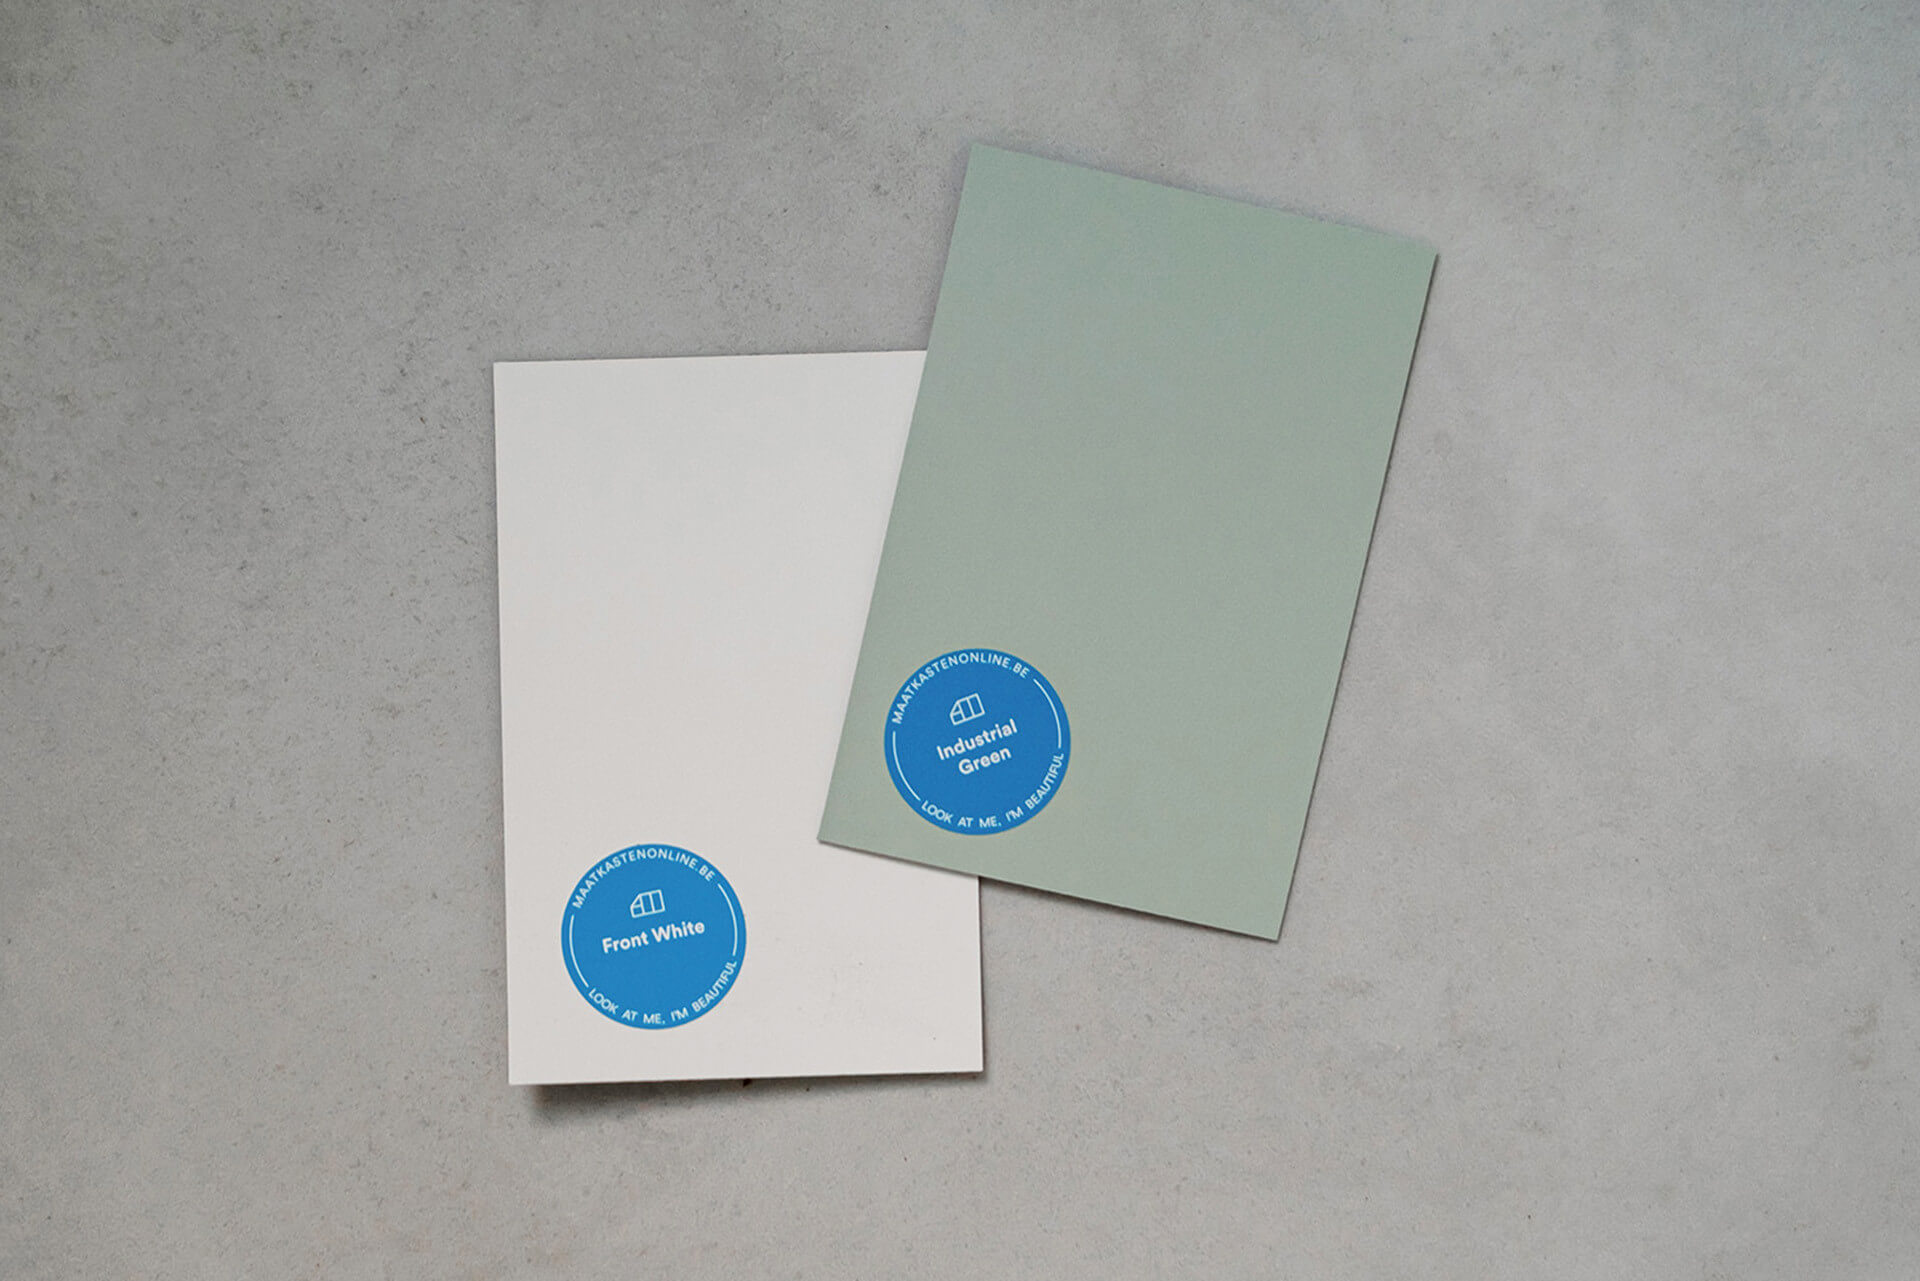 Échantillons de couleur gratuits 'Industrial Green' et 'Front White' posés sur un sol en béton